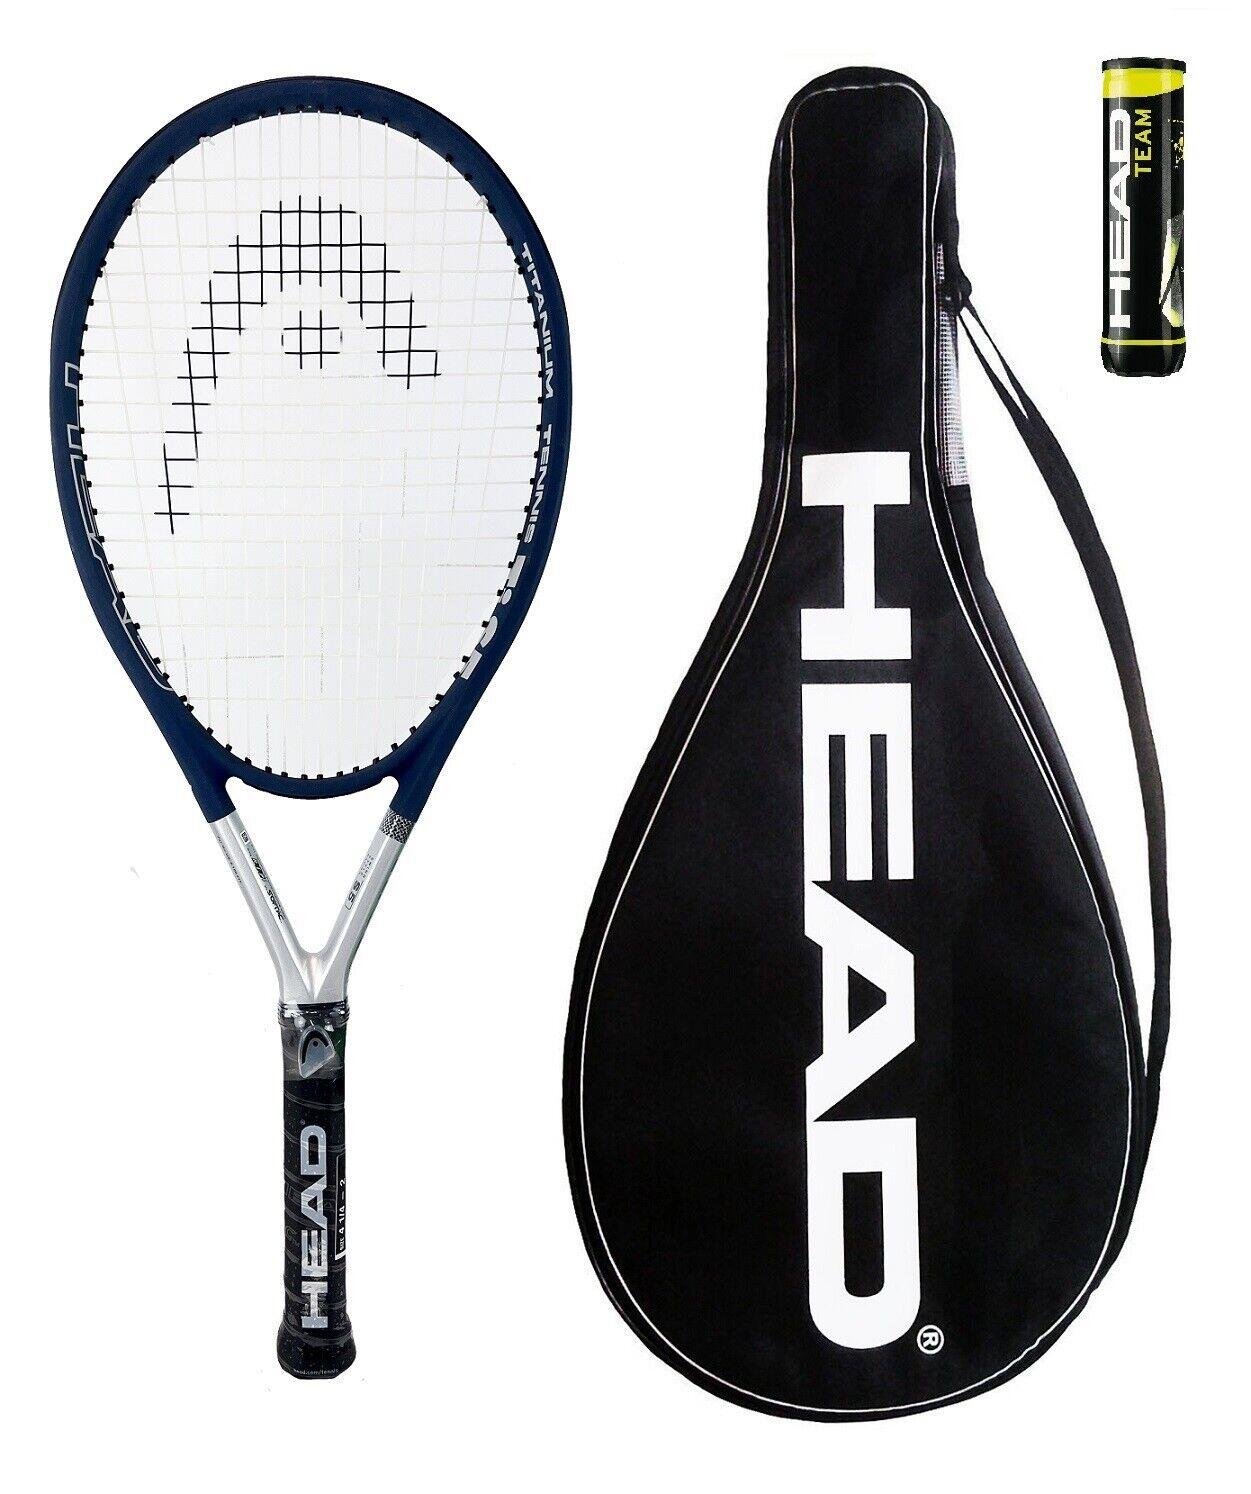 Head Ti S5 Comfort Titanium Tennis Racket, Cover & Balls - Grip 2 1/4